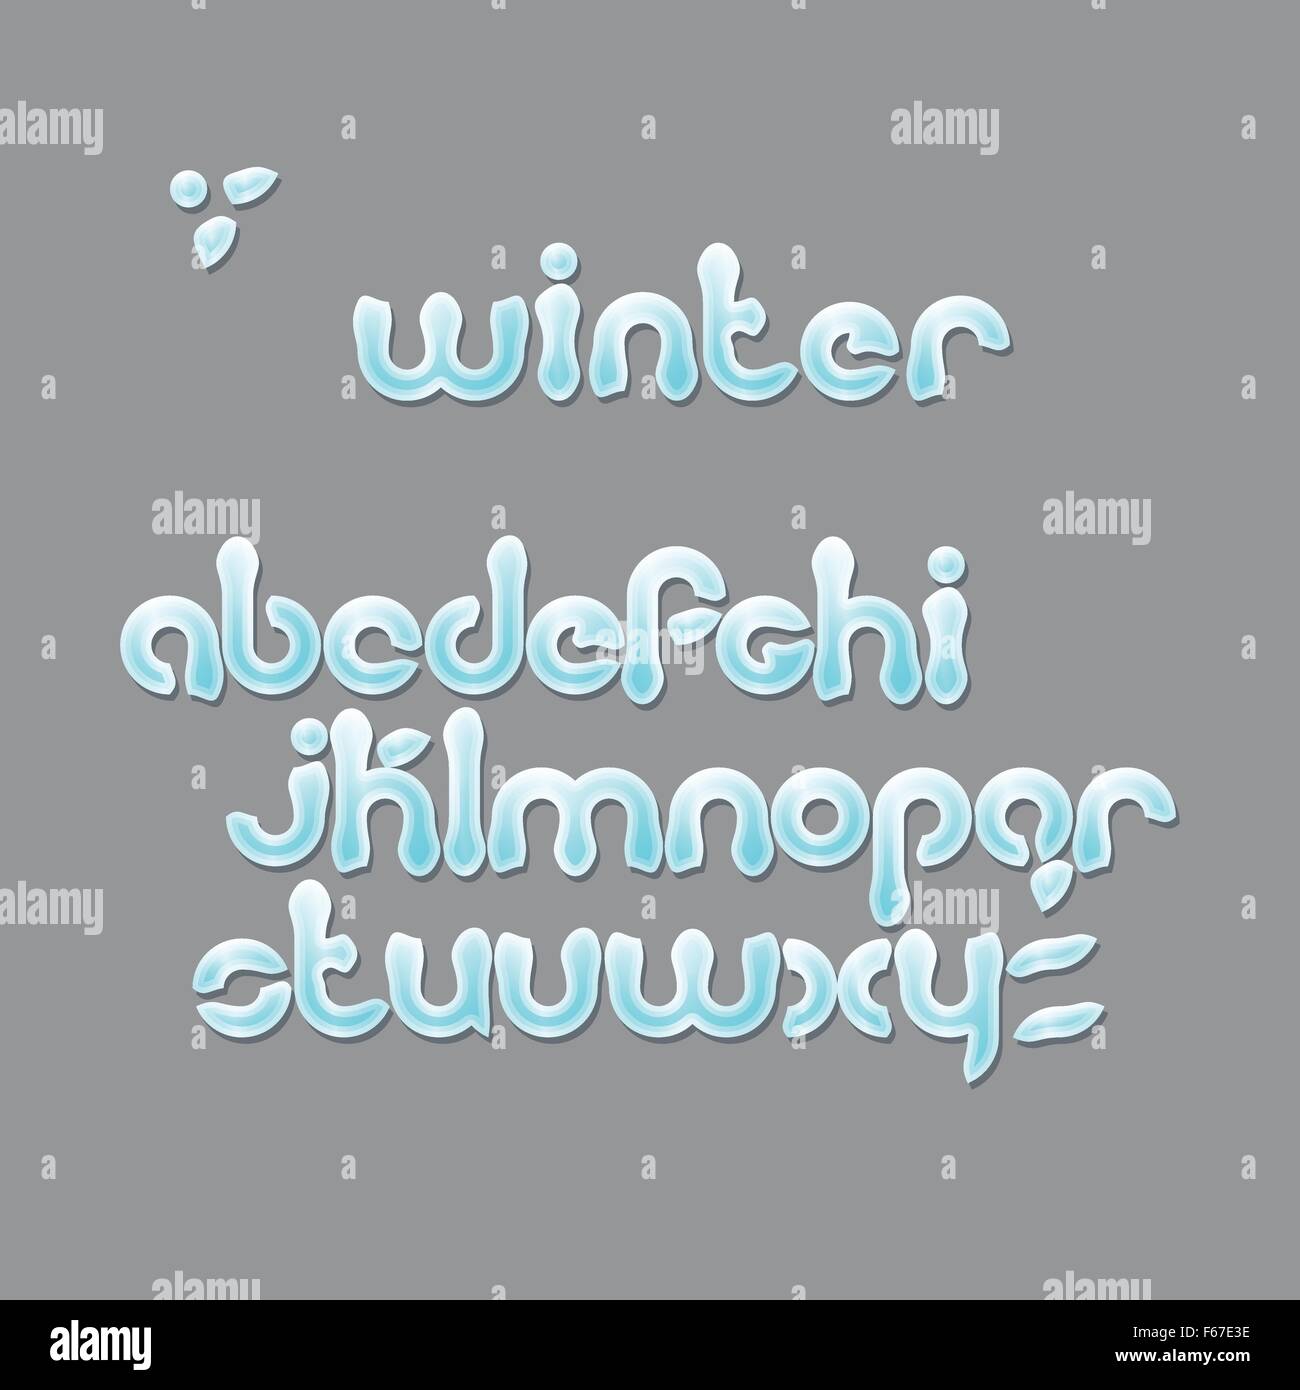 Wintersaison, Cartoon Stil Alphabet Buchstaben. Weihnachten, Schnee-Schriftart auf grauem Hintergrund isoliert. Vektor-festliche Text desig Stock Vektor